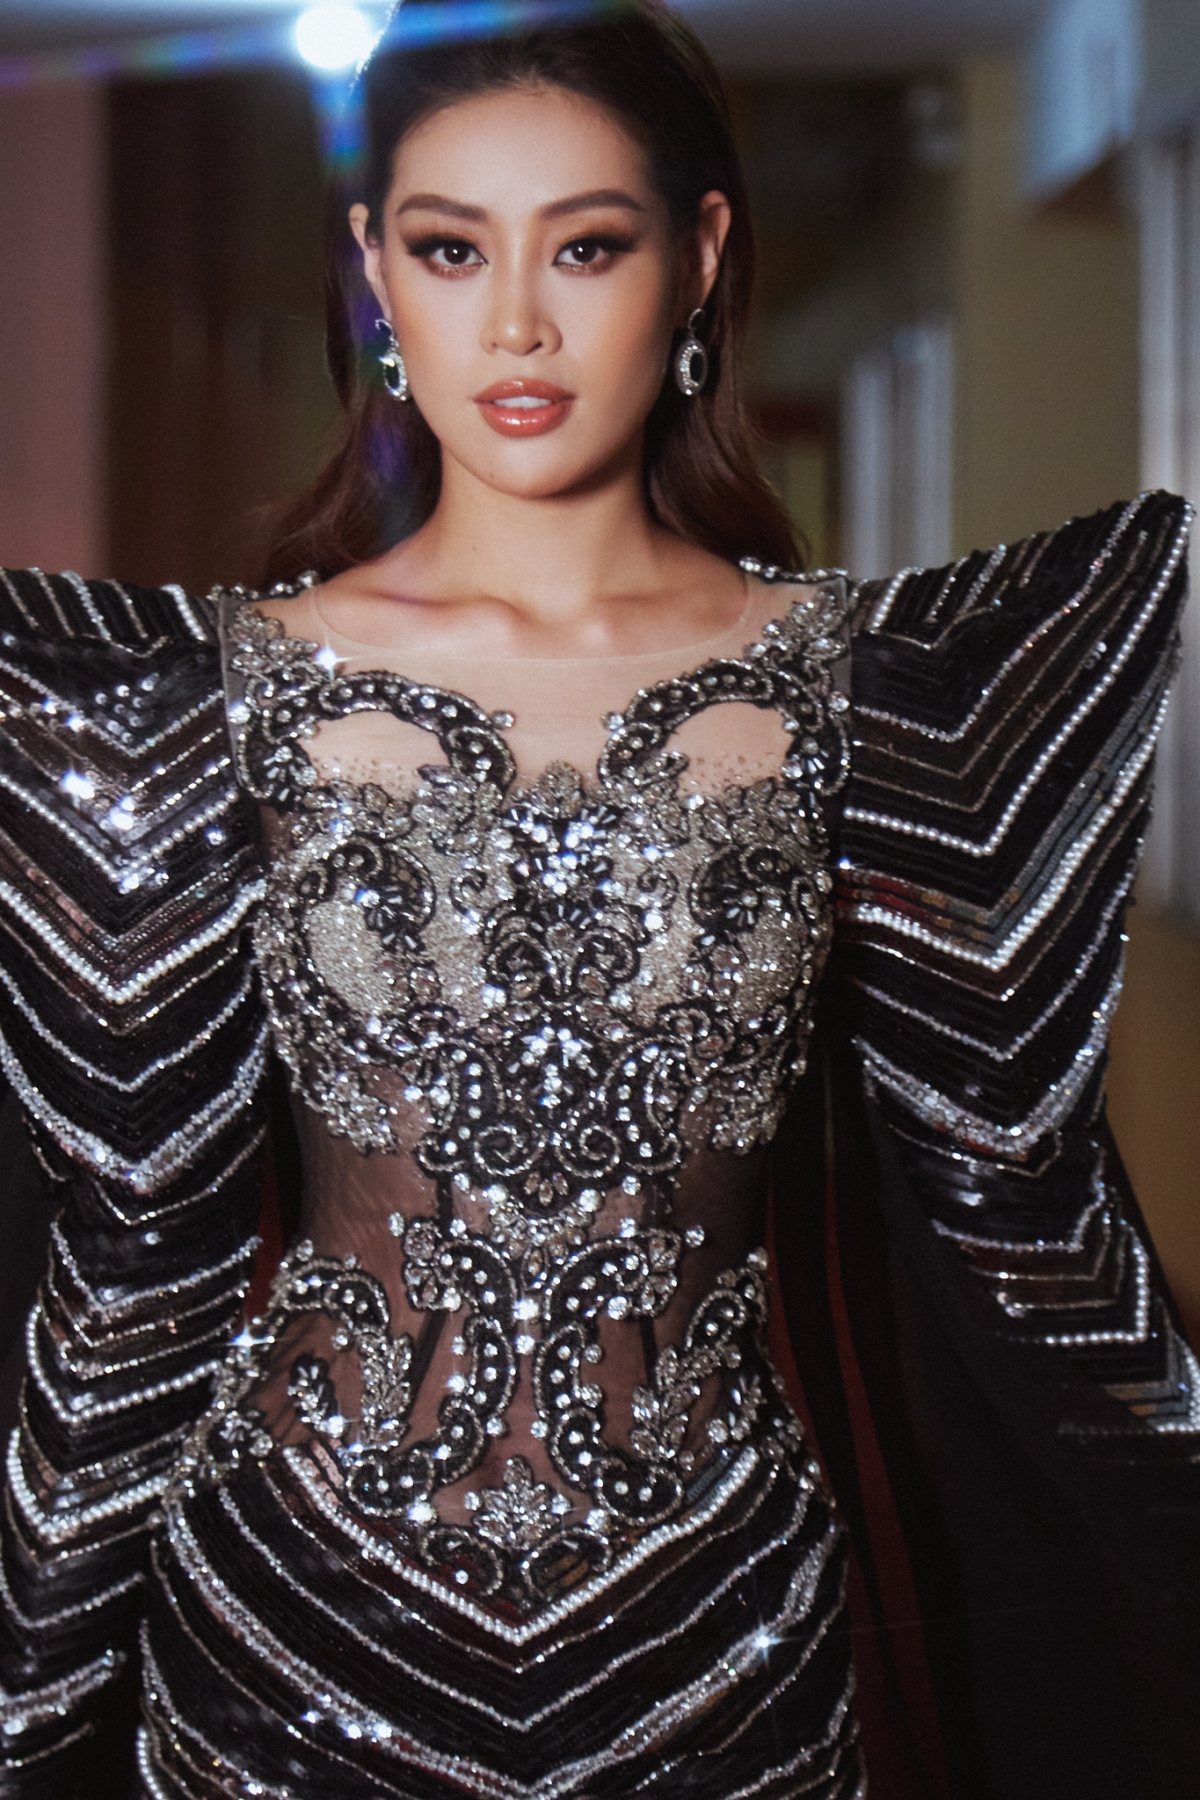 Ngay sau khi kết thúc chương trình, Hoa hậu Khánh Vân tiếp tục trở lại với “Tôi là Hoa hậu Hoàn vũ Việt Nam 2022”, cùng thí sinh chuẩn bị cho đêm diễn thời trang “Vinawoman Fashion Show” diễn ra 23/04/2022.